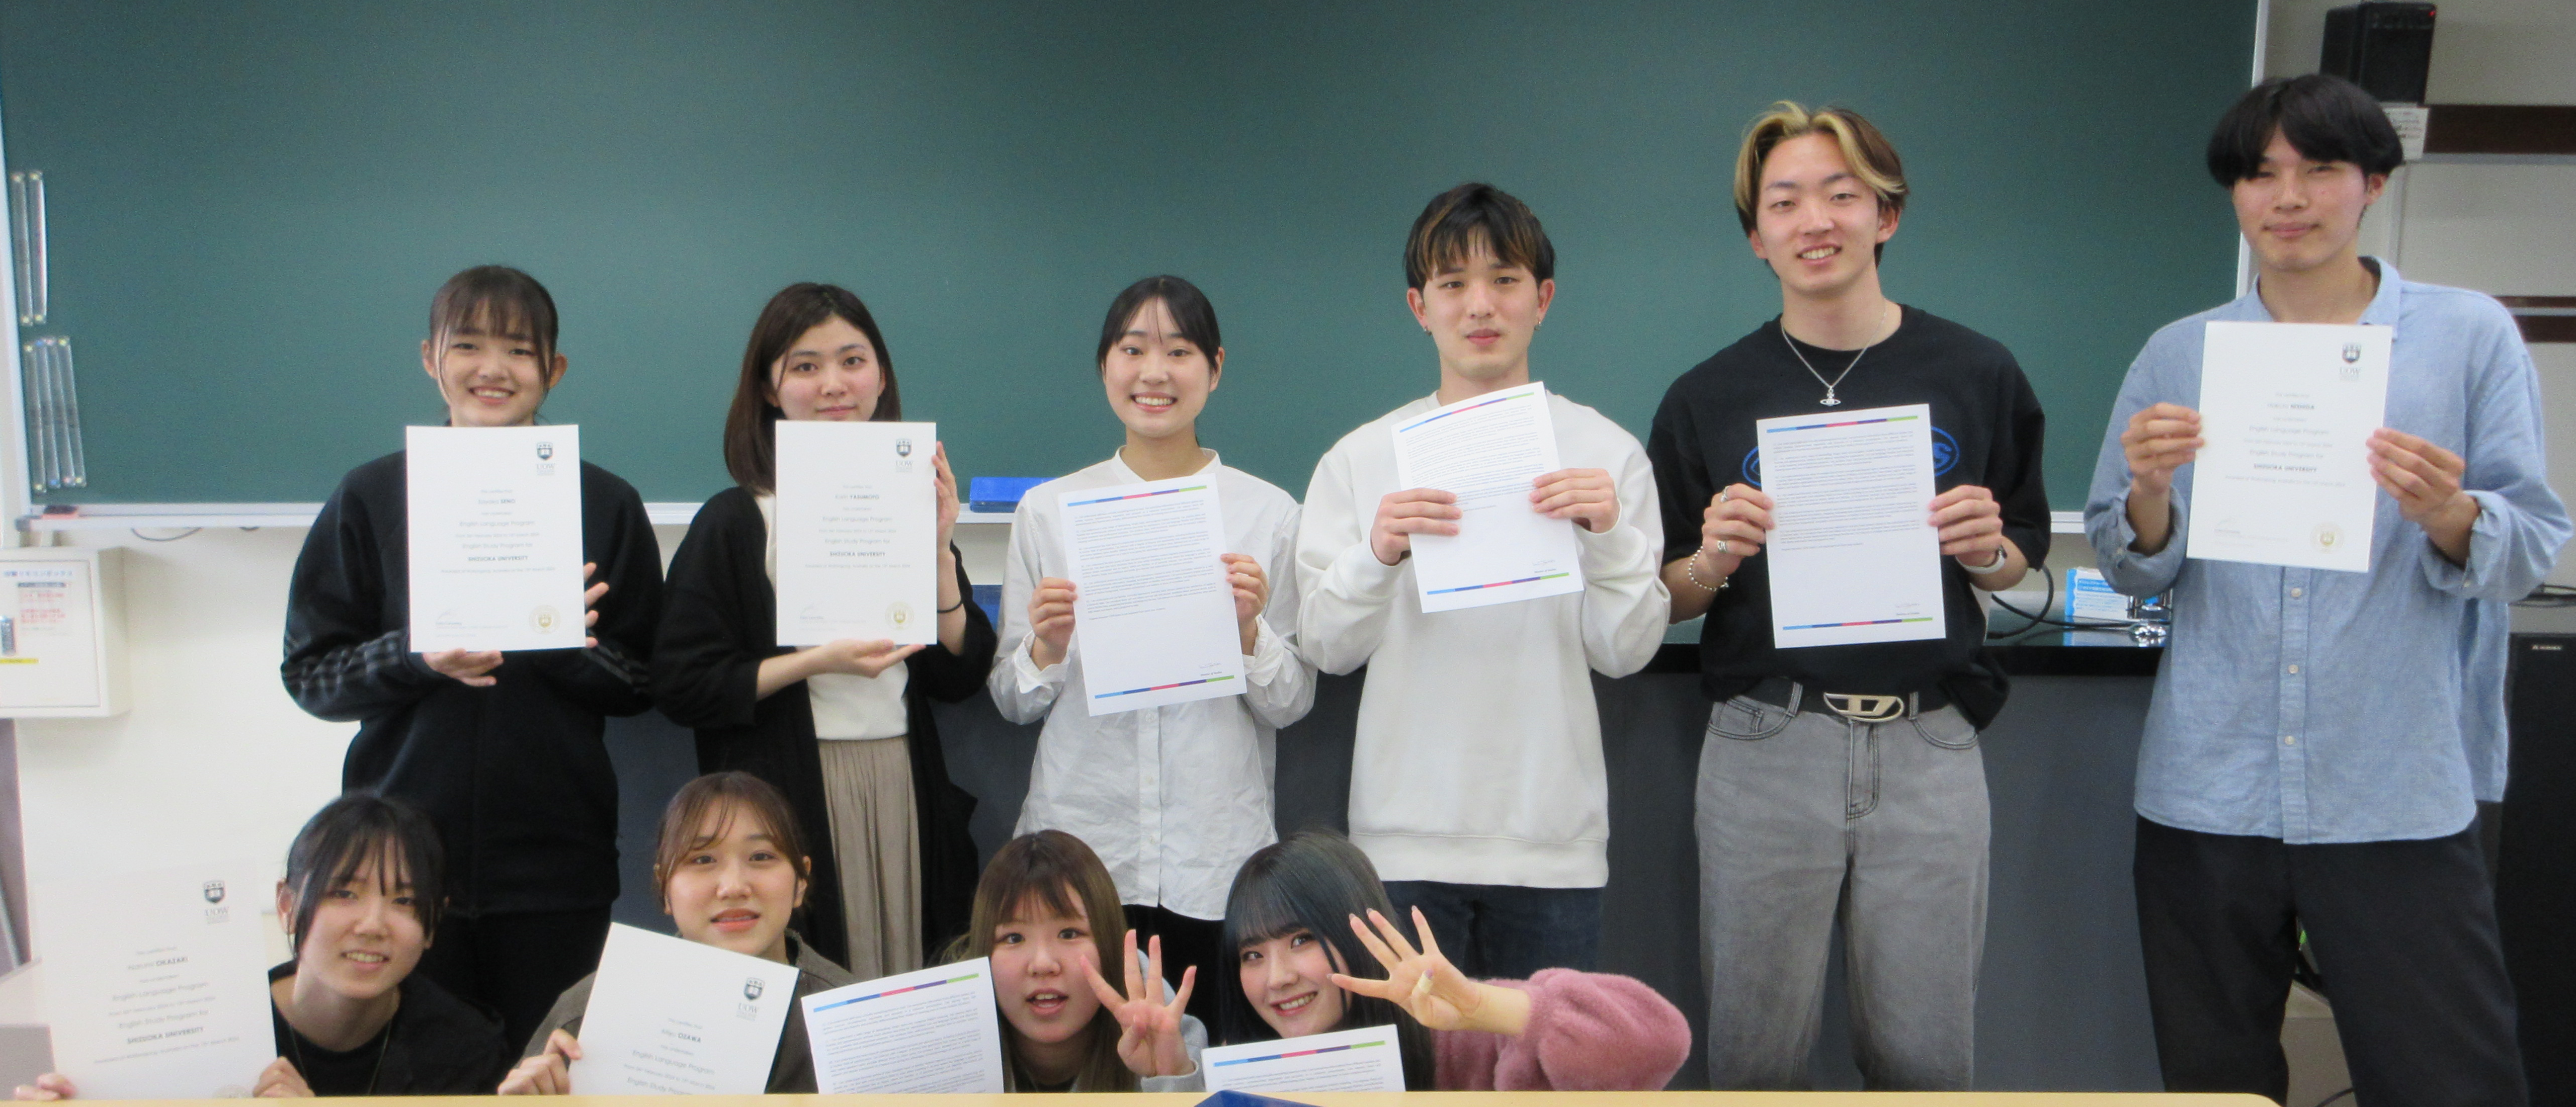 静岡大学未来創成基金からグローバル共創科学部学生12名へ留学支援金を支給しました